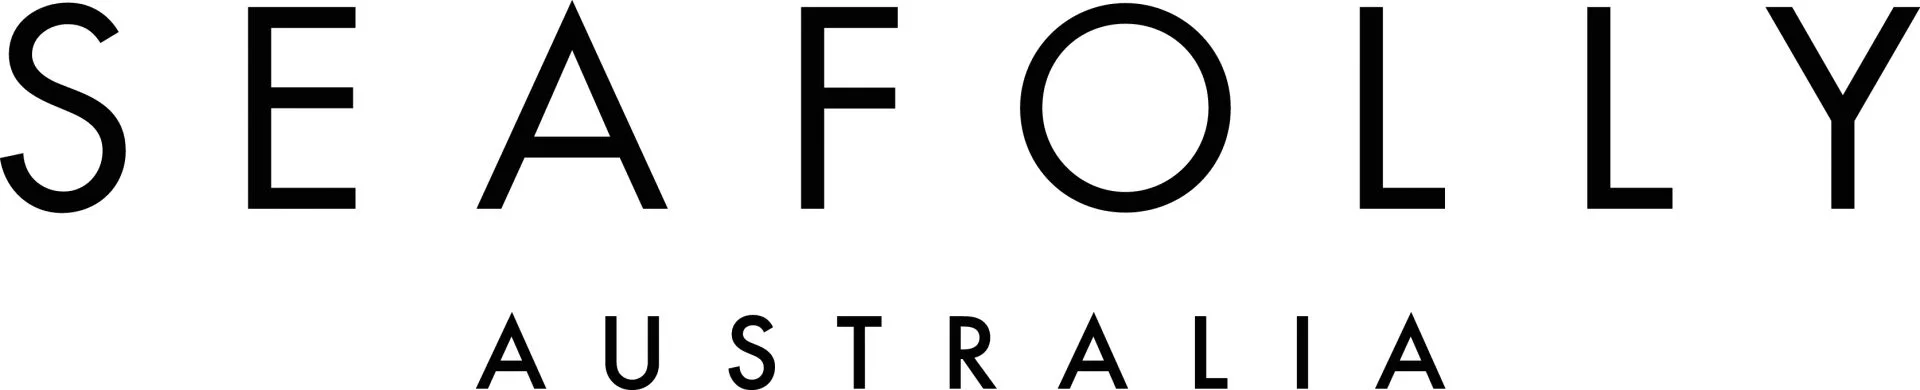 badkledingmerk Seafolly logo